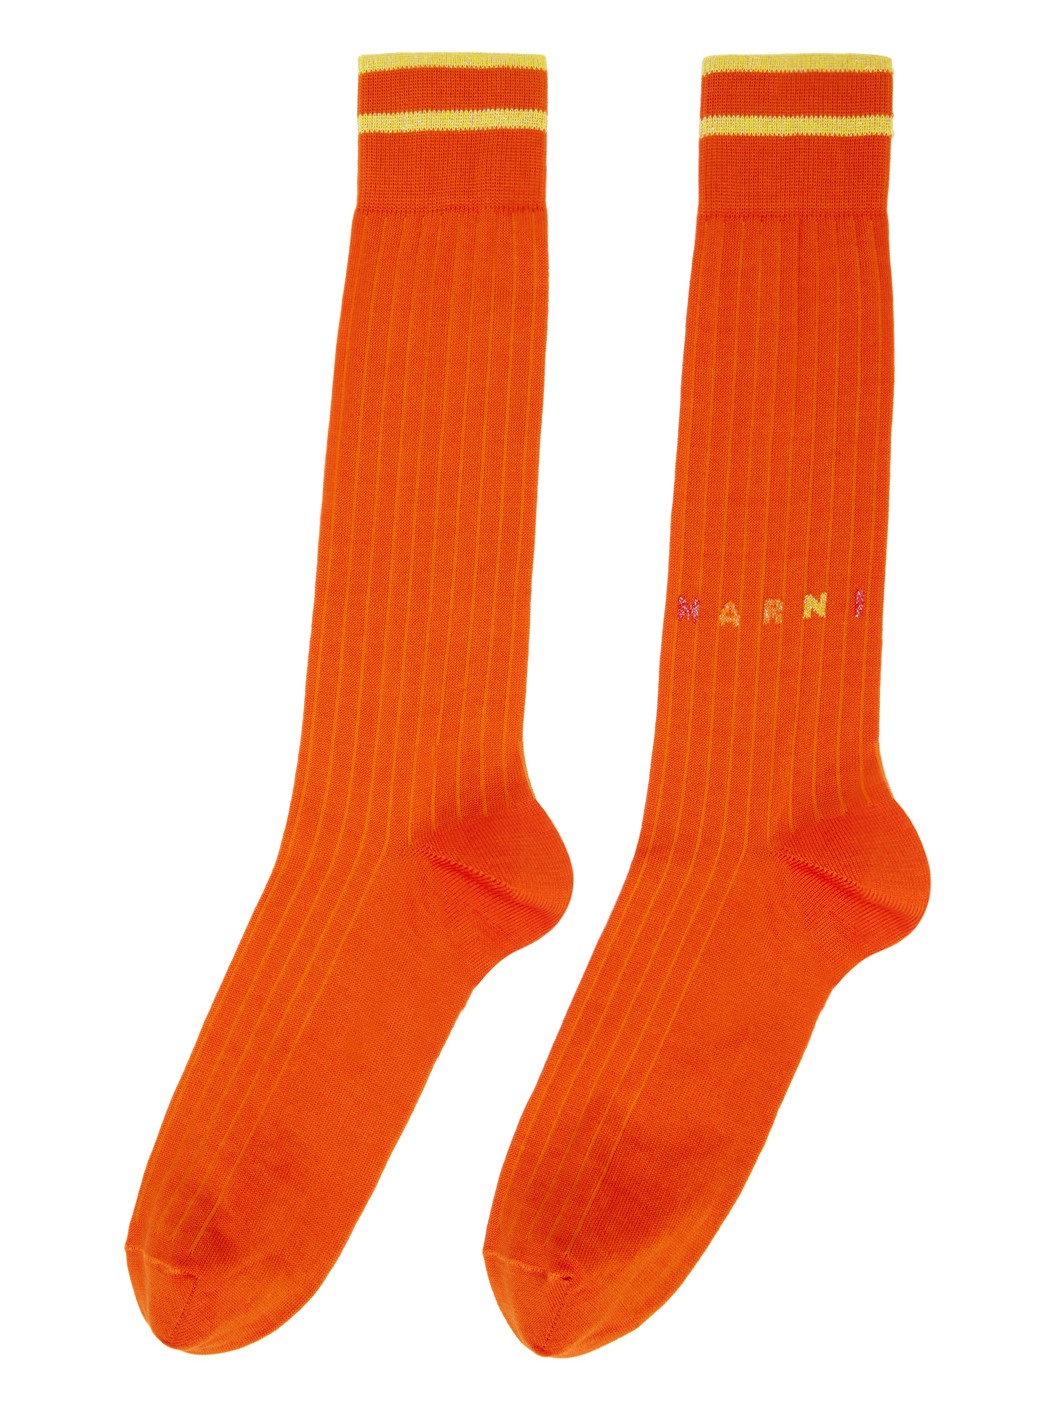 Orange Striped Socks - 2